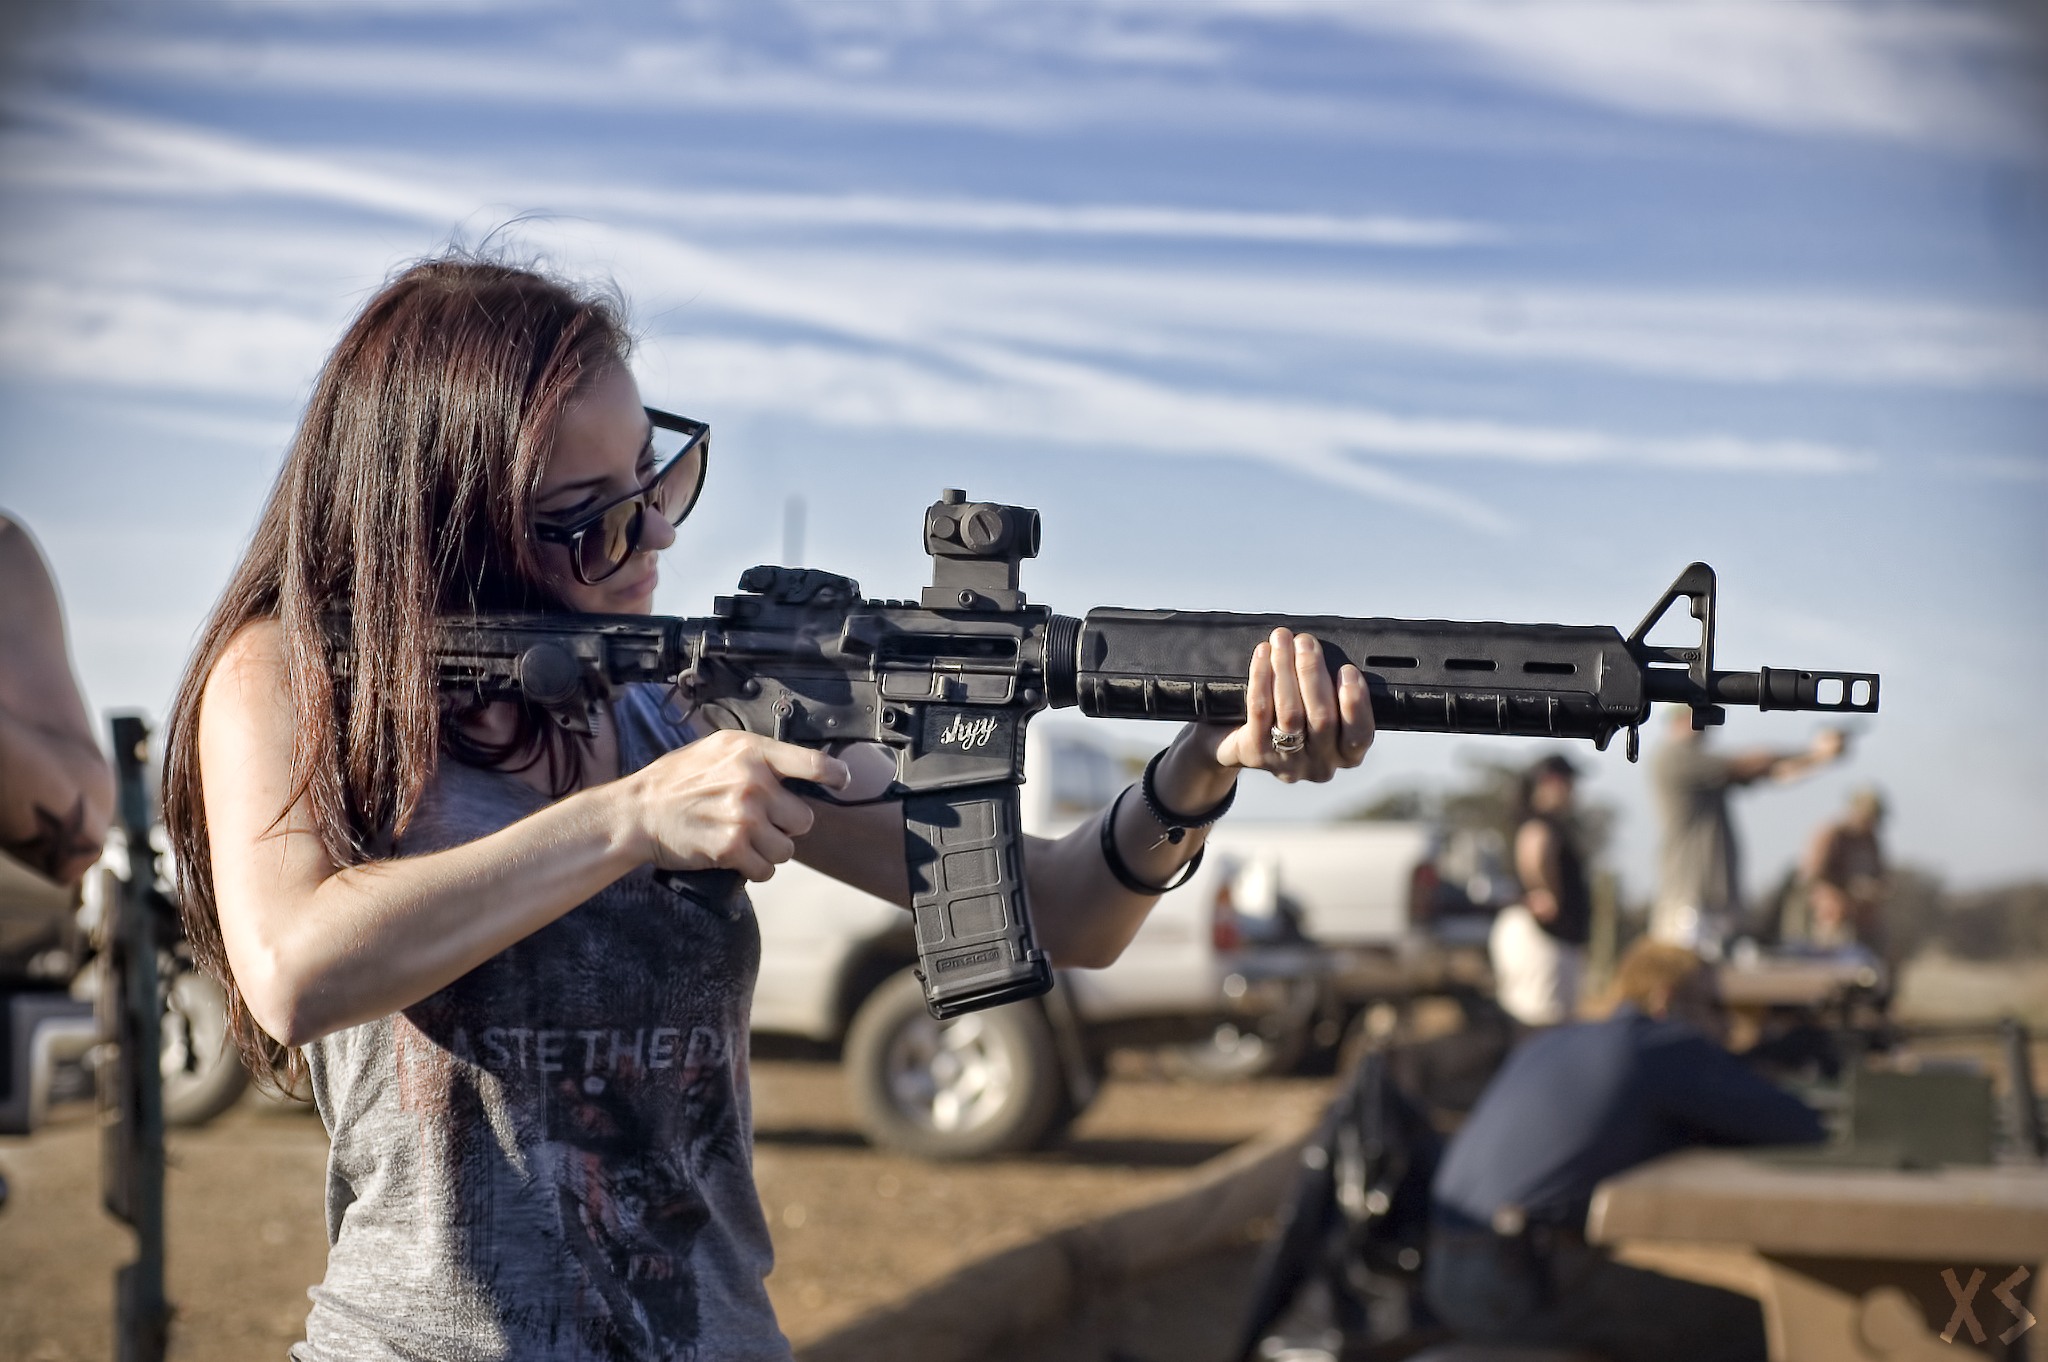 총을 가진 소녀 벽지,총,총기,촬영,슈팅 스포츠,장난감 총